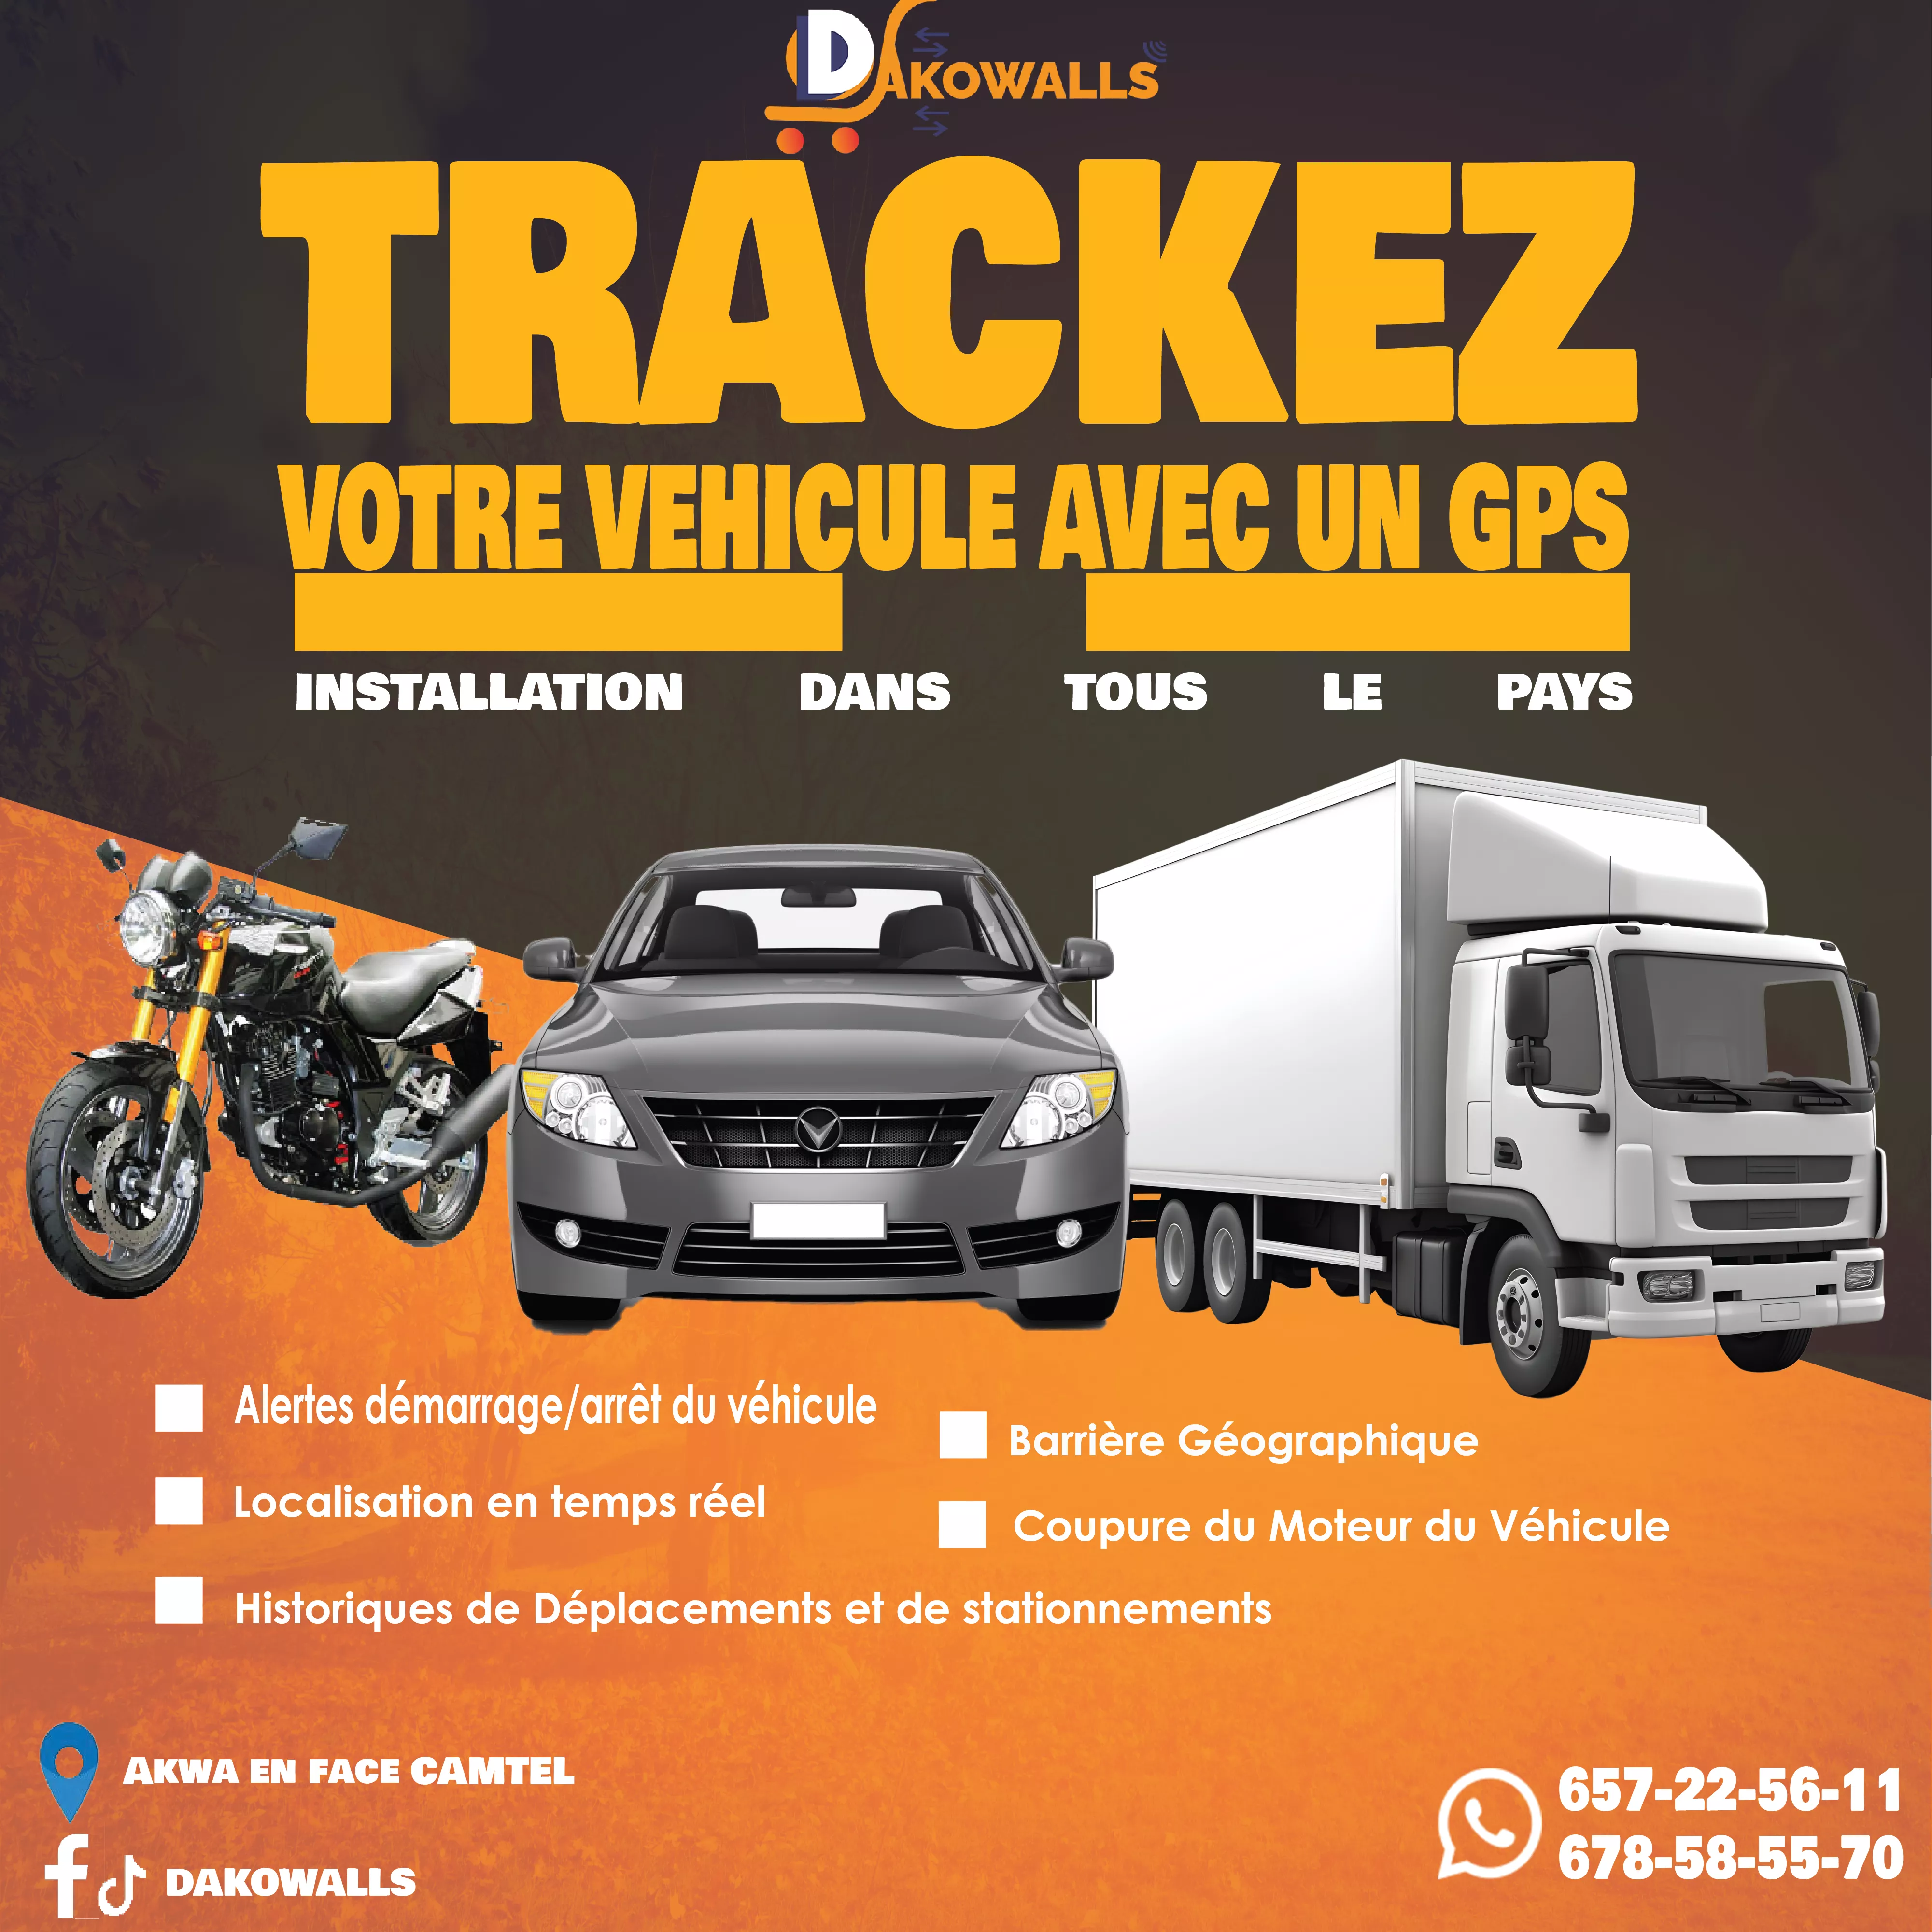 Traceur gps pour localiser son véhicule à 50000 - Petites annonces gratuites - Achat et vente à Douala, Cameroun